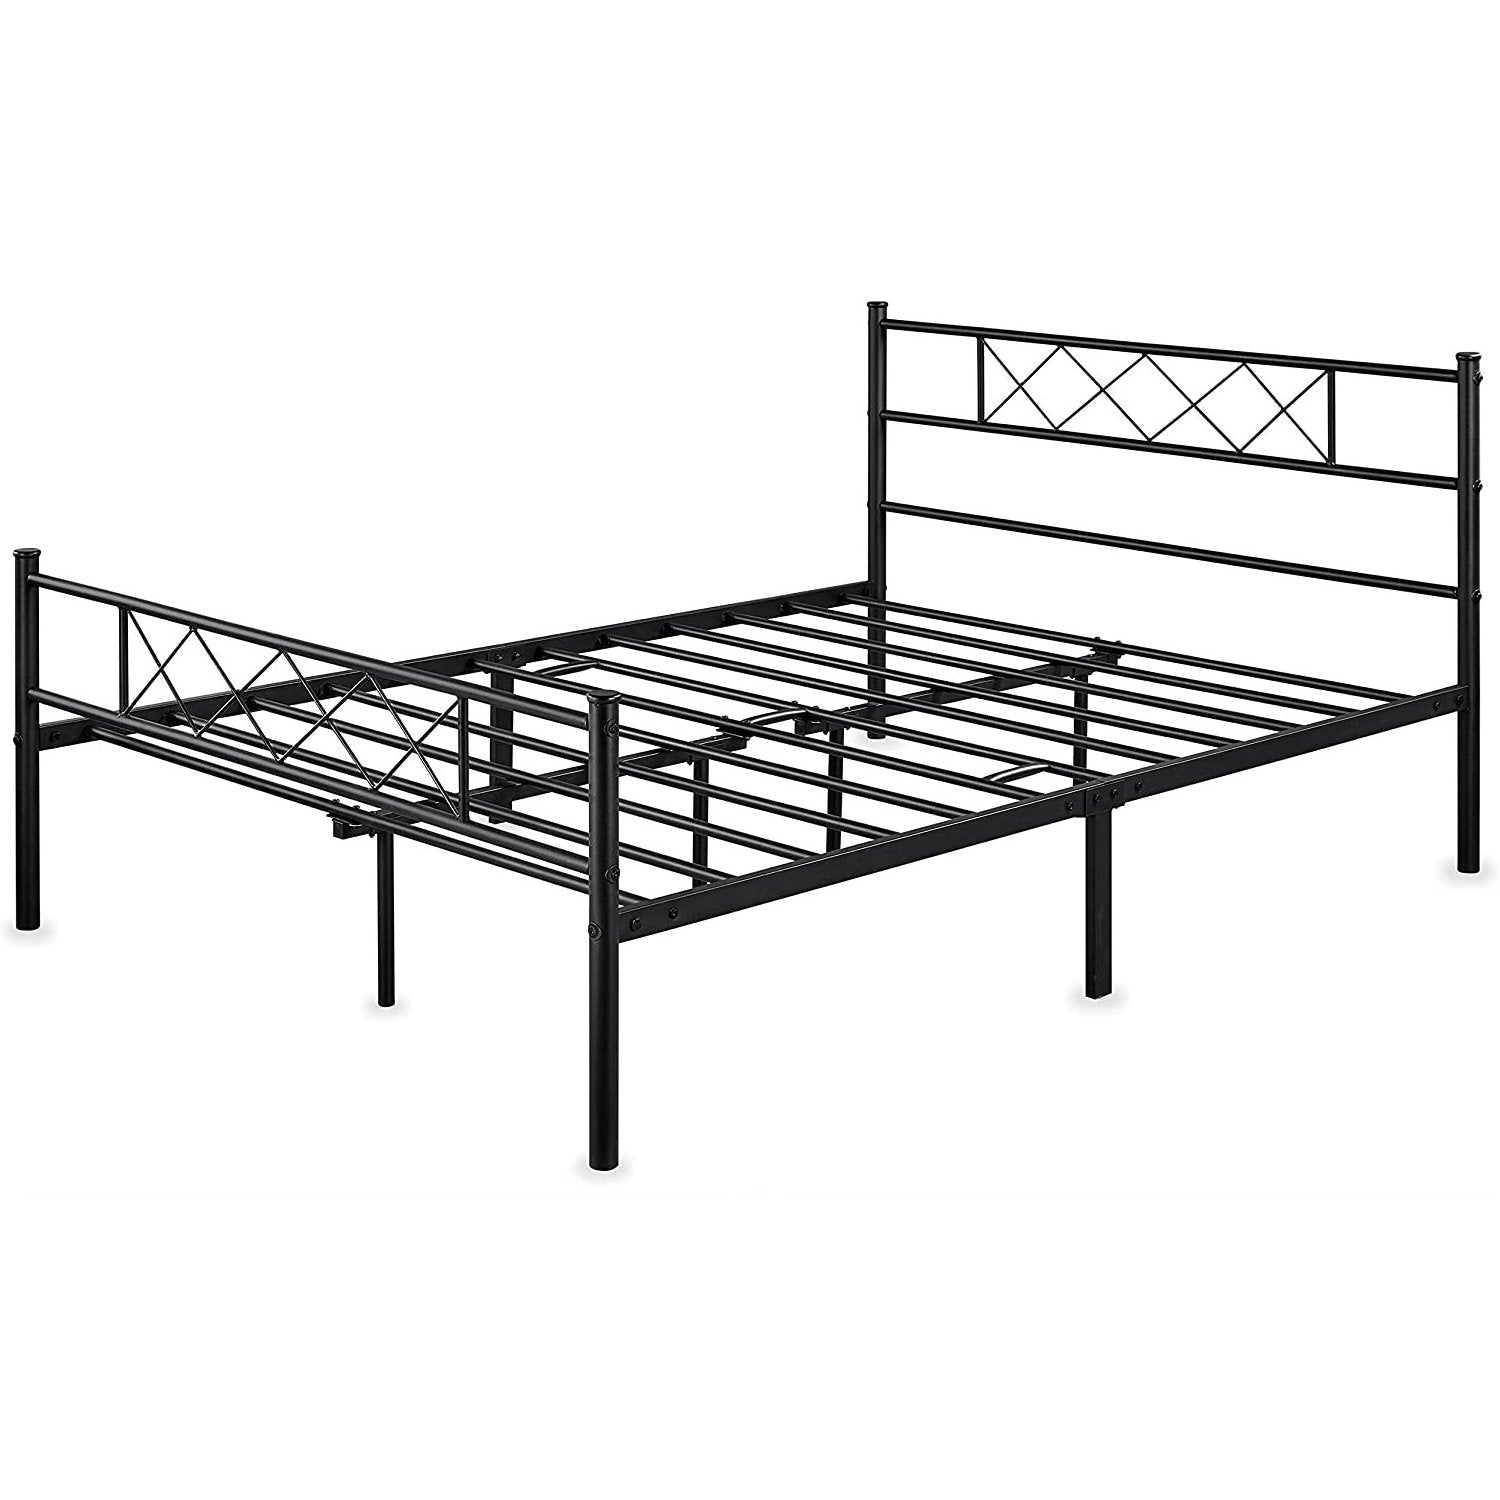 Bedroom > Bed Frames > Platform Beds - Queen Size Traditional Powder Coated Slatted Metal Platform Bed